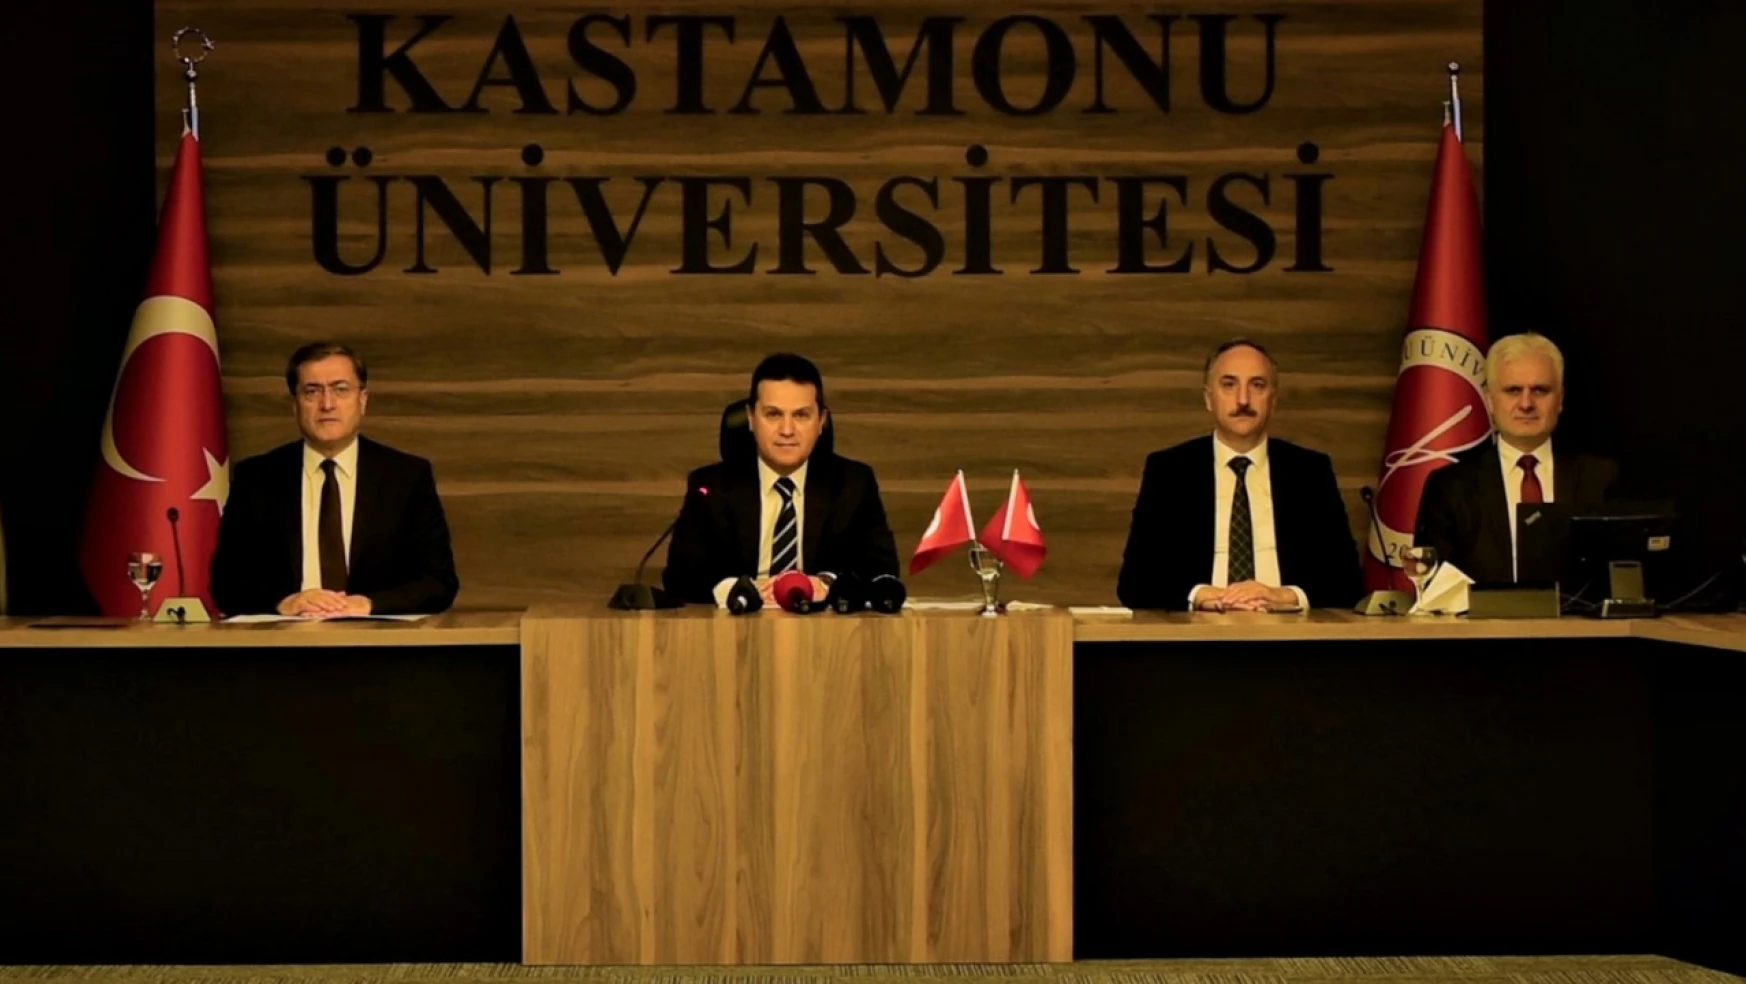 Kastamonu Üniversitesi Rektörü Topal'dan 4 yıllık rapor: 'Görülmemiş başarı yakaladık'